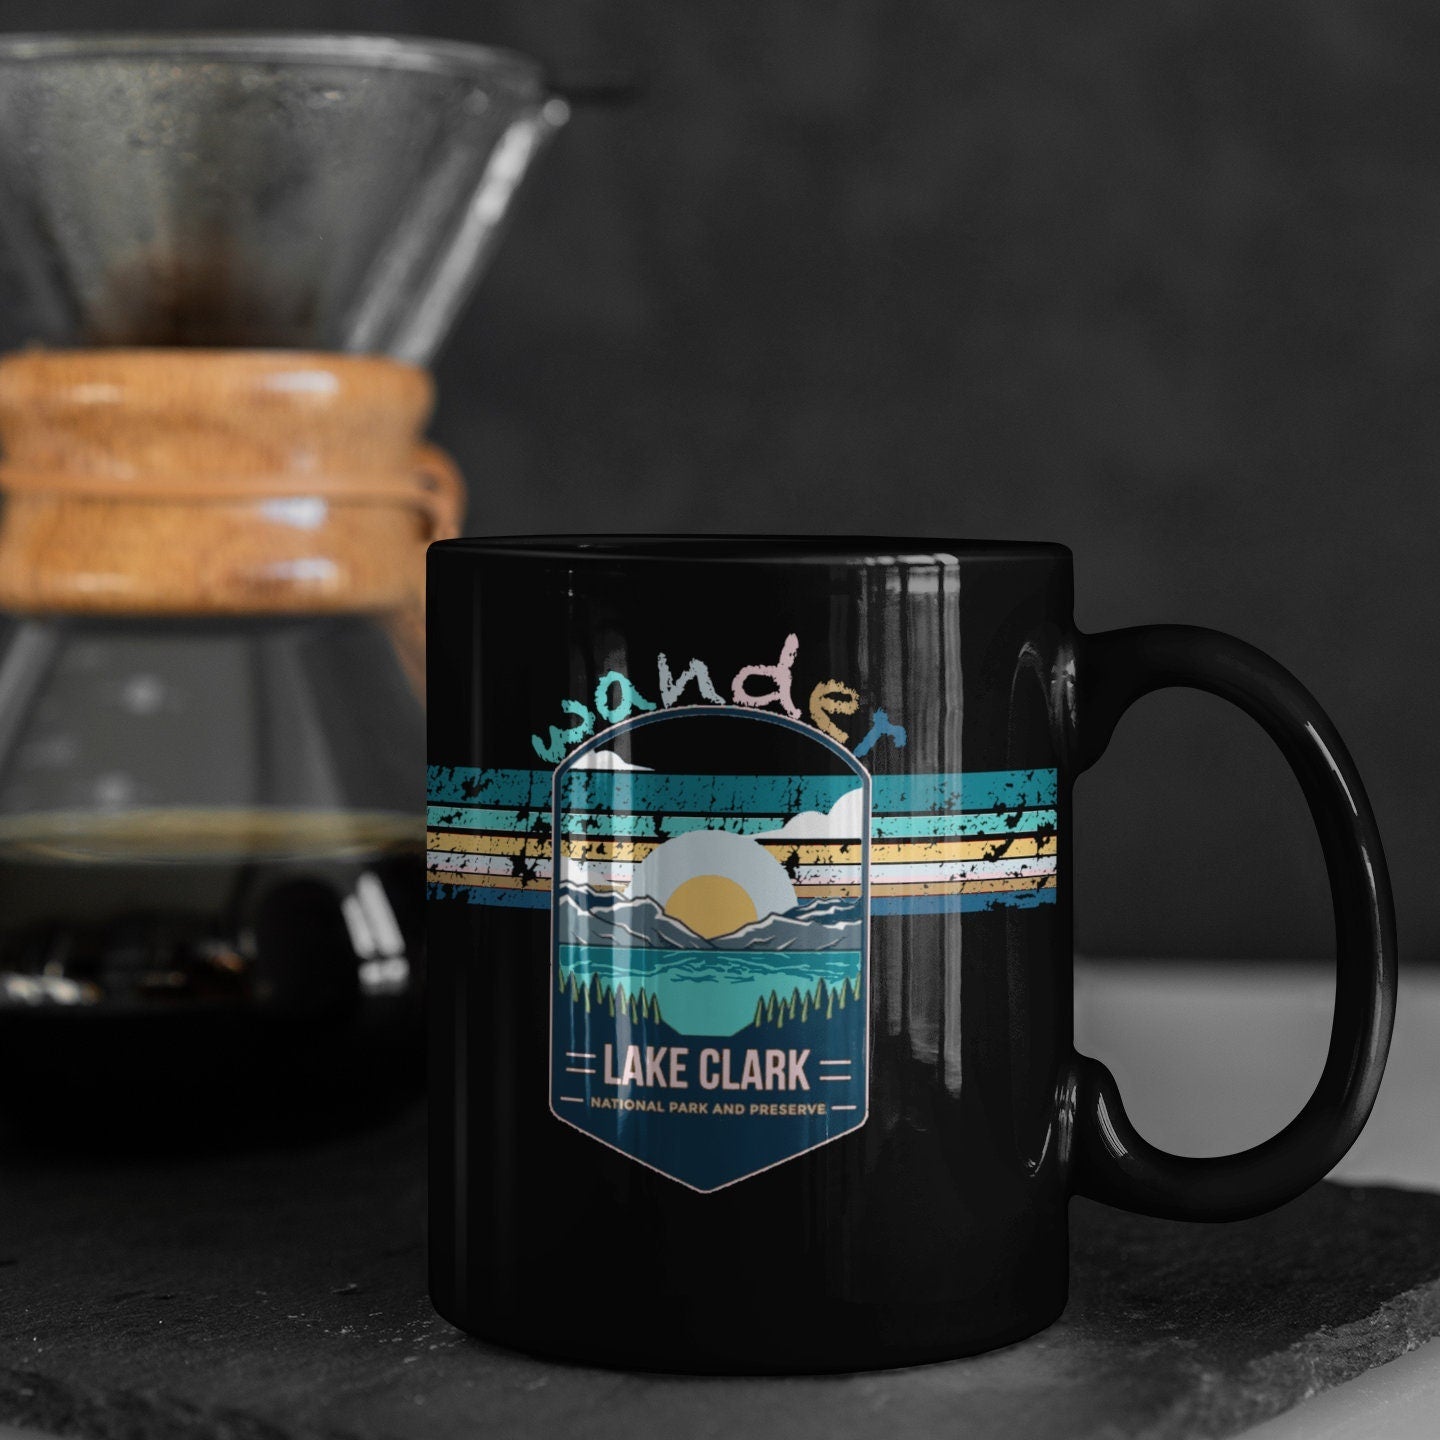 Lake Clark National Park Mug - Alaska Black Coffee Mug 15oz - Coral and Vine Co